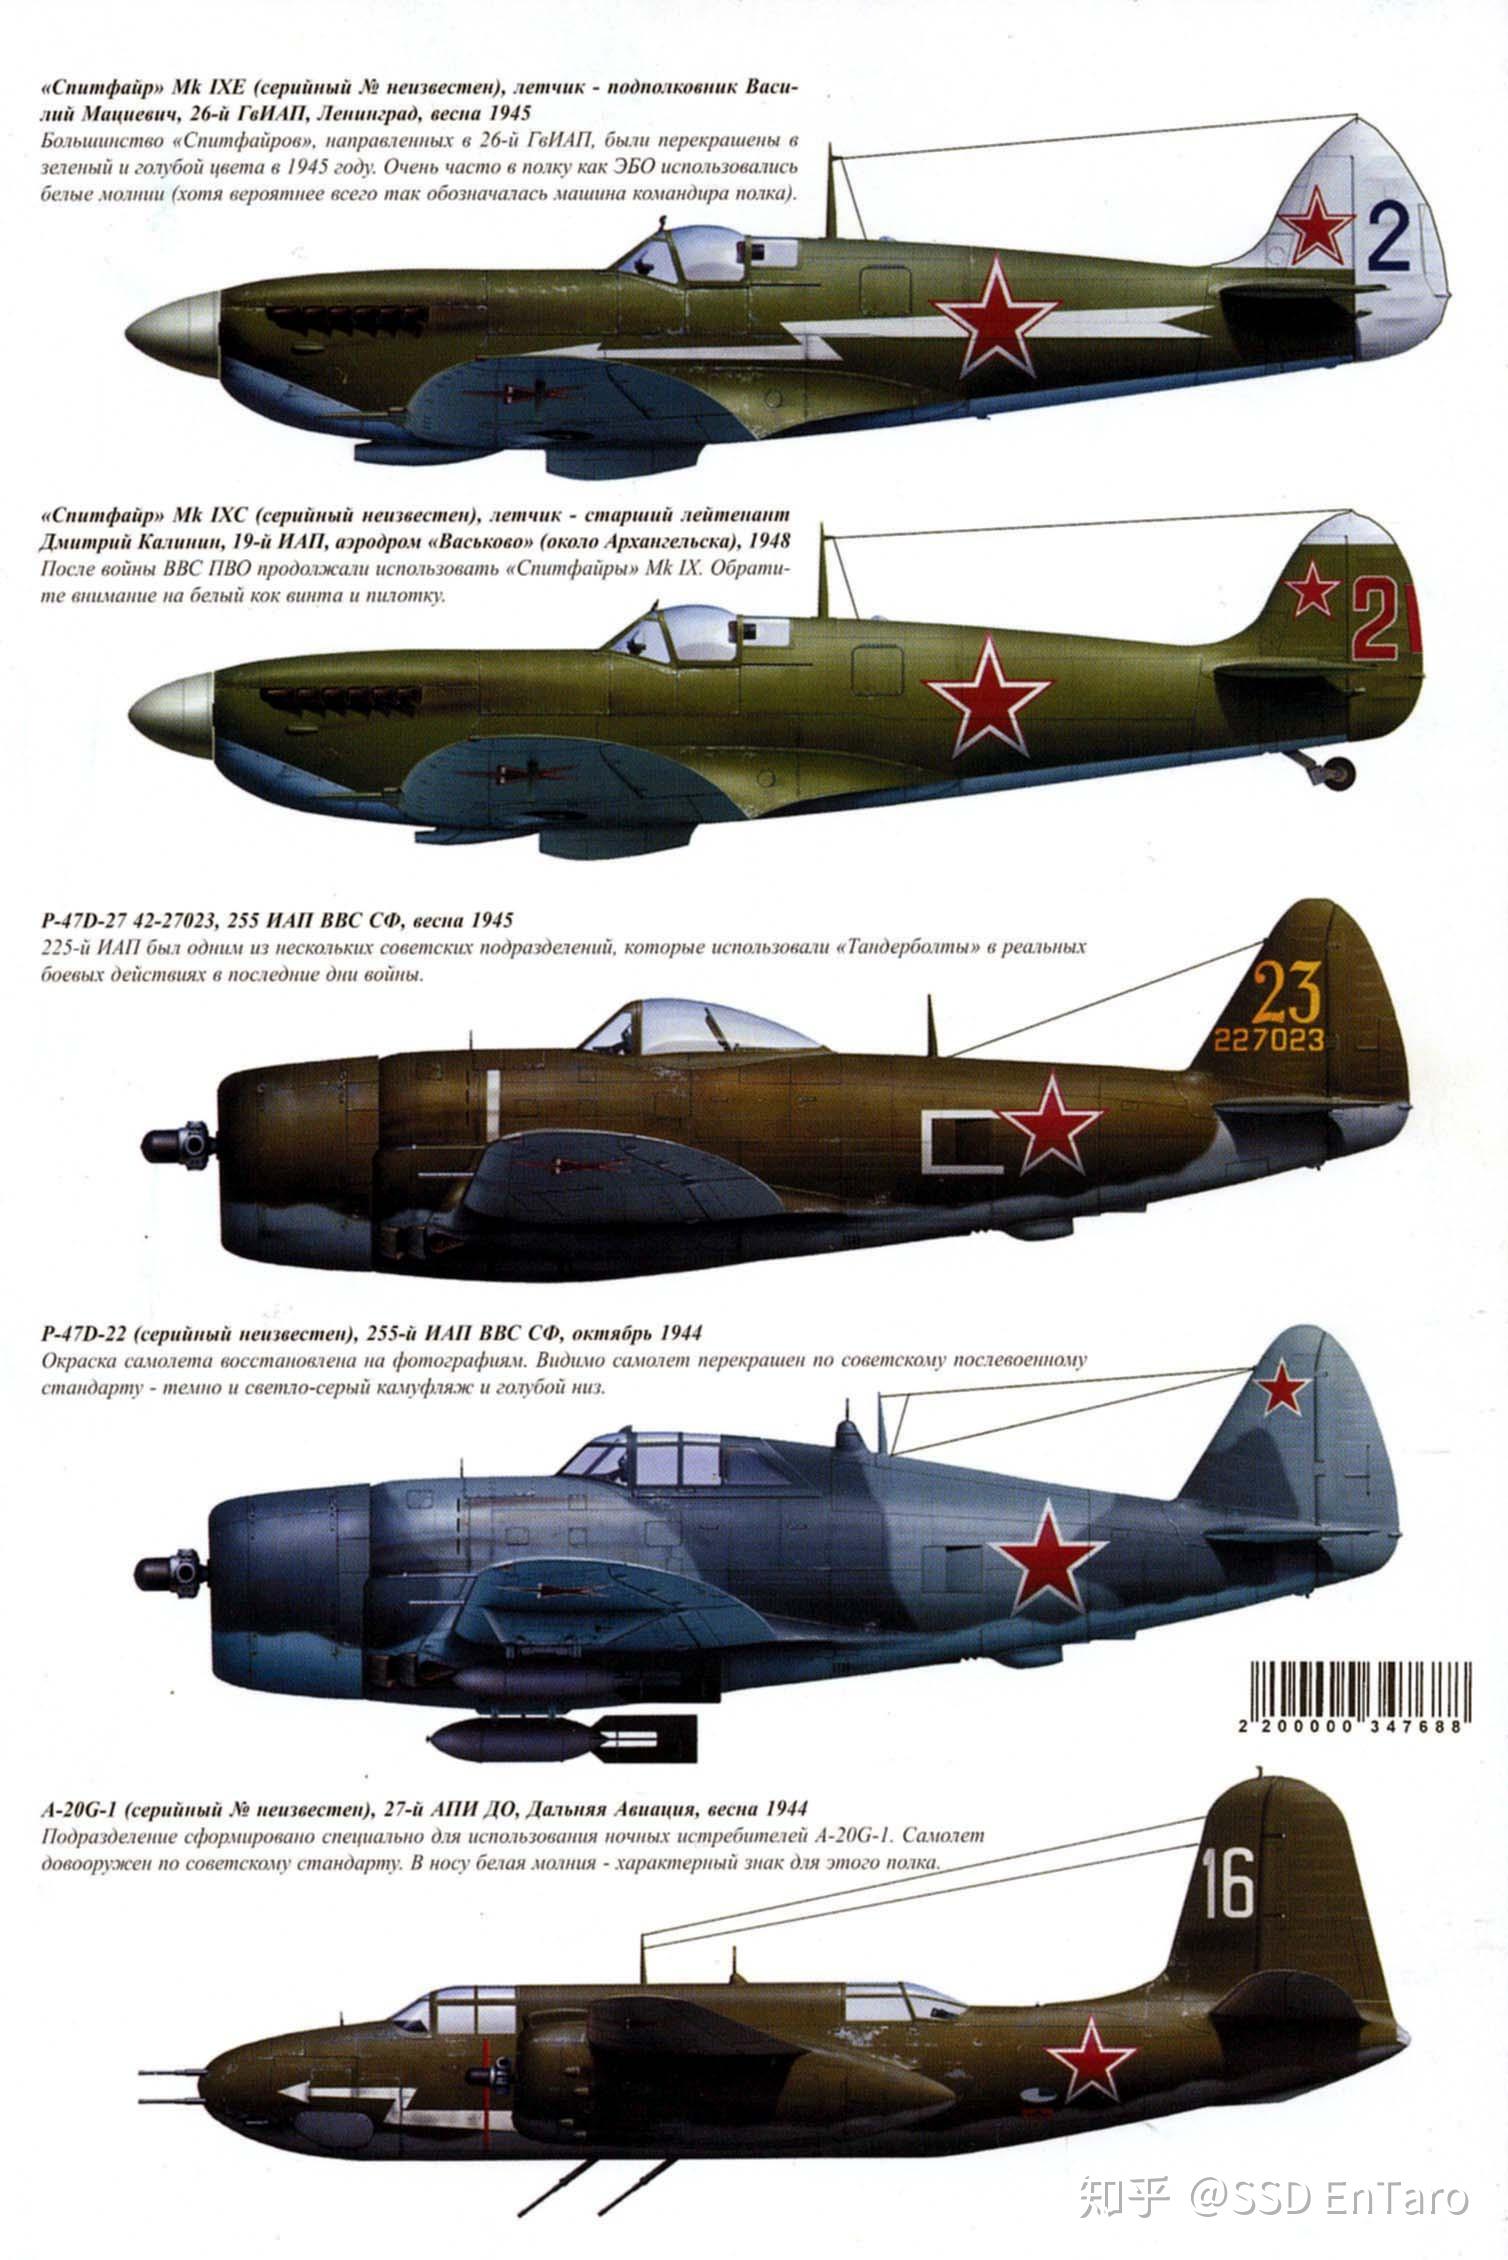 二战时苏联有哪些可以与喷火式和bf109平起平坐的战斗机